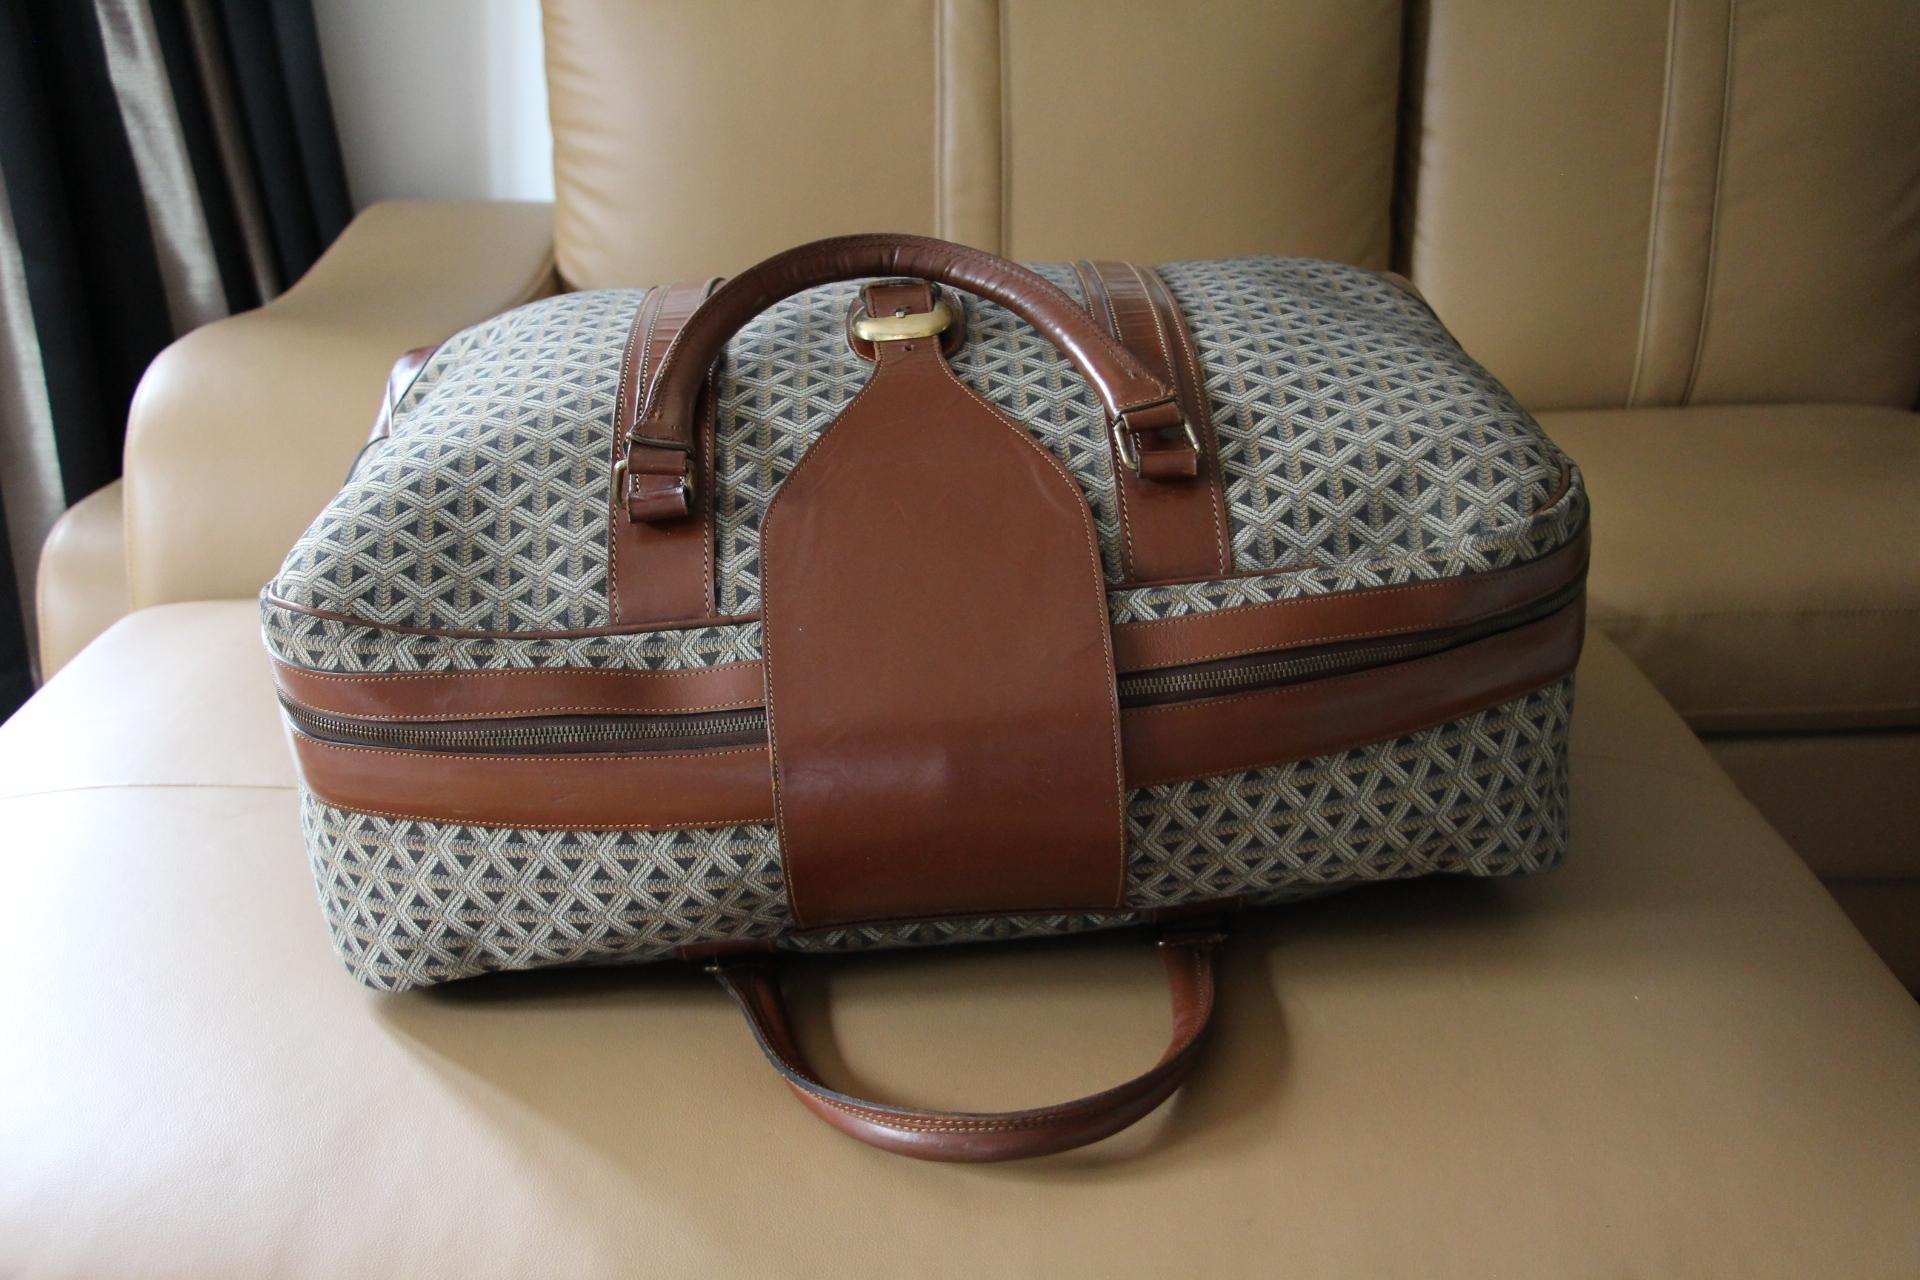 Goyard Suitcase in Woven Canvas, Goyard Steamer Trunk, Goyard Travel Bag 2